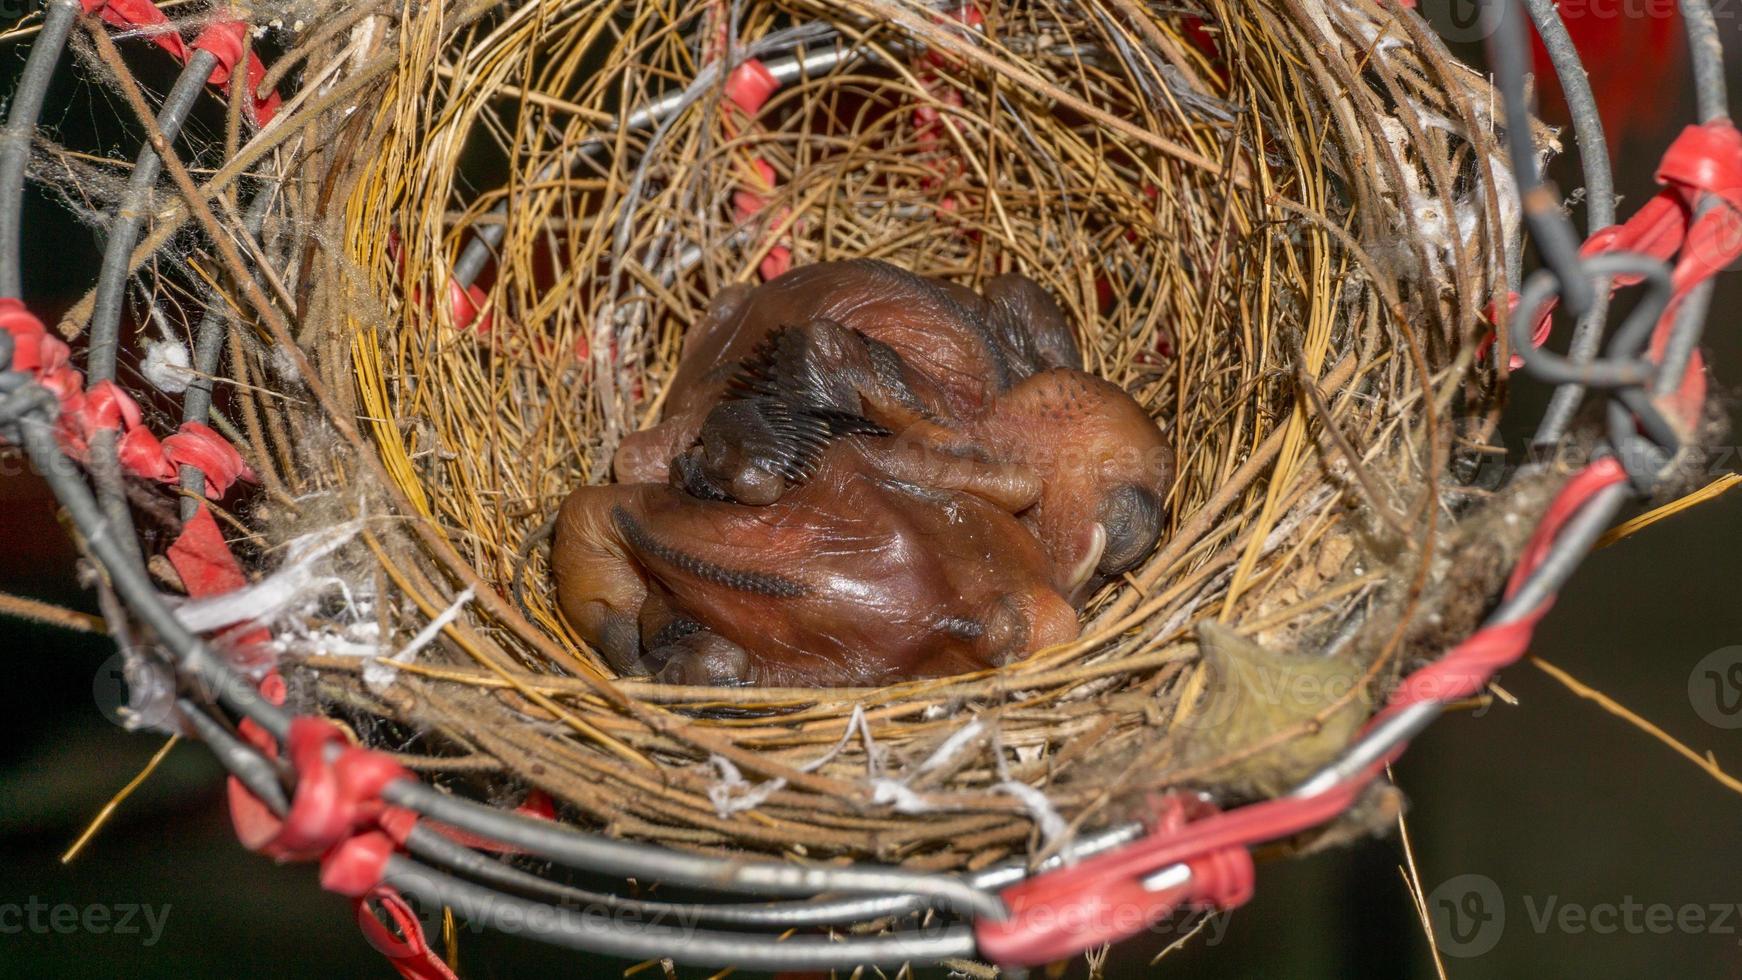 bebé orejas rayadas bulbos en un aves nido foto